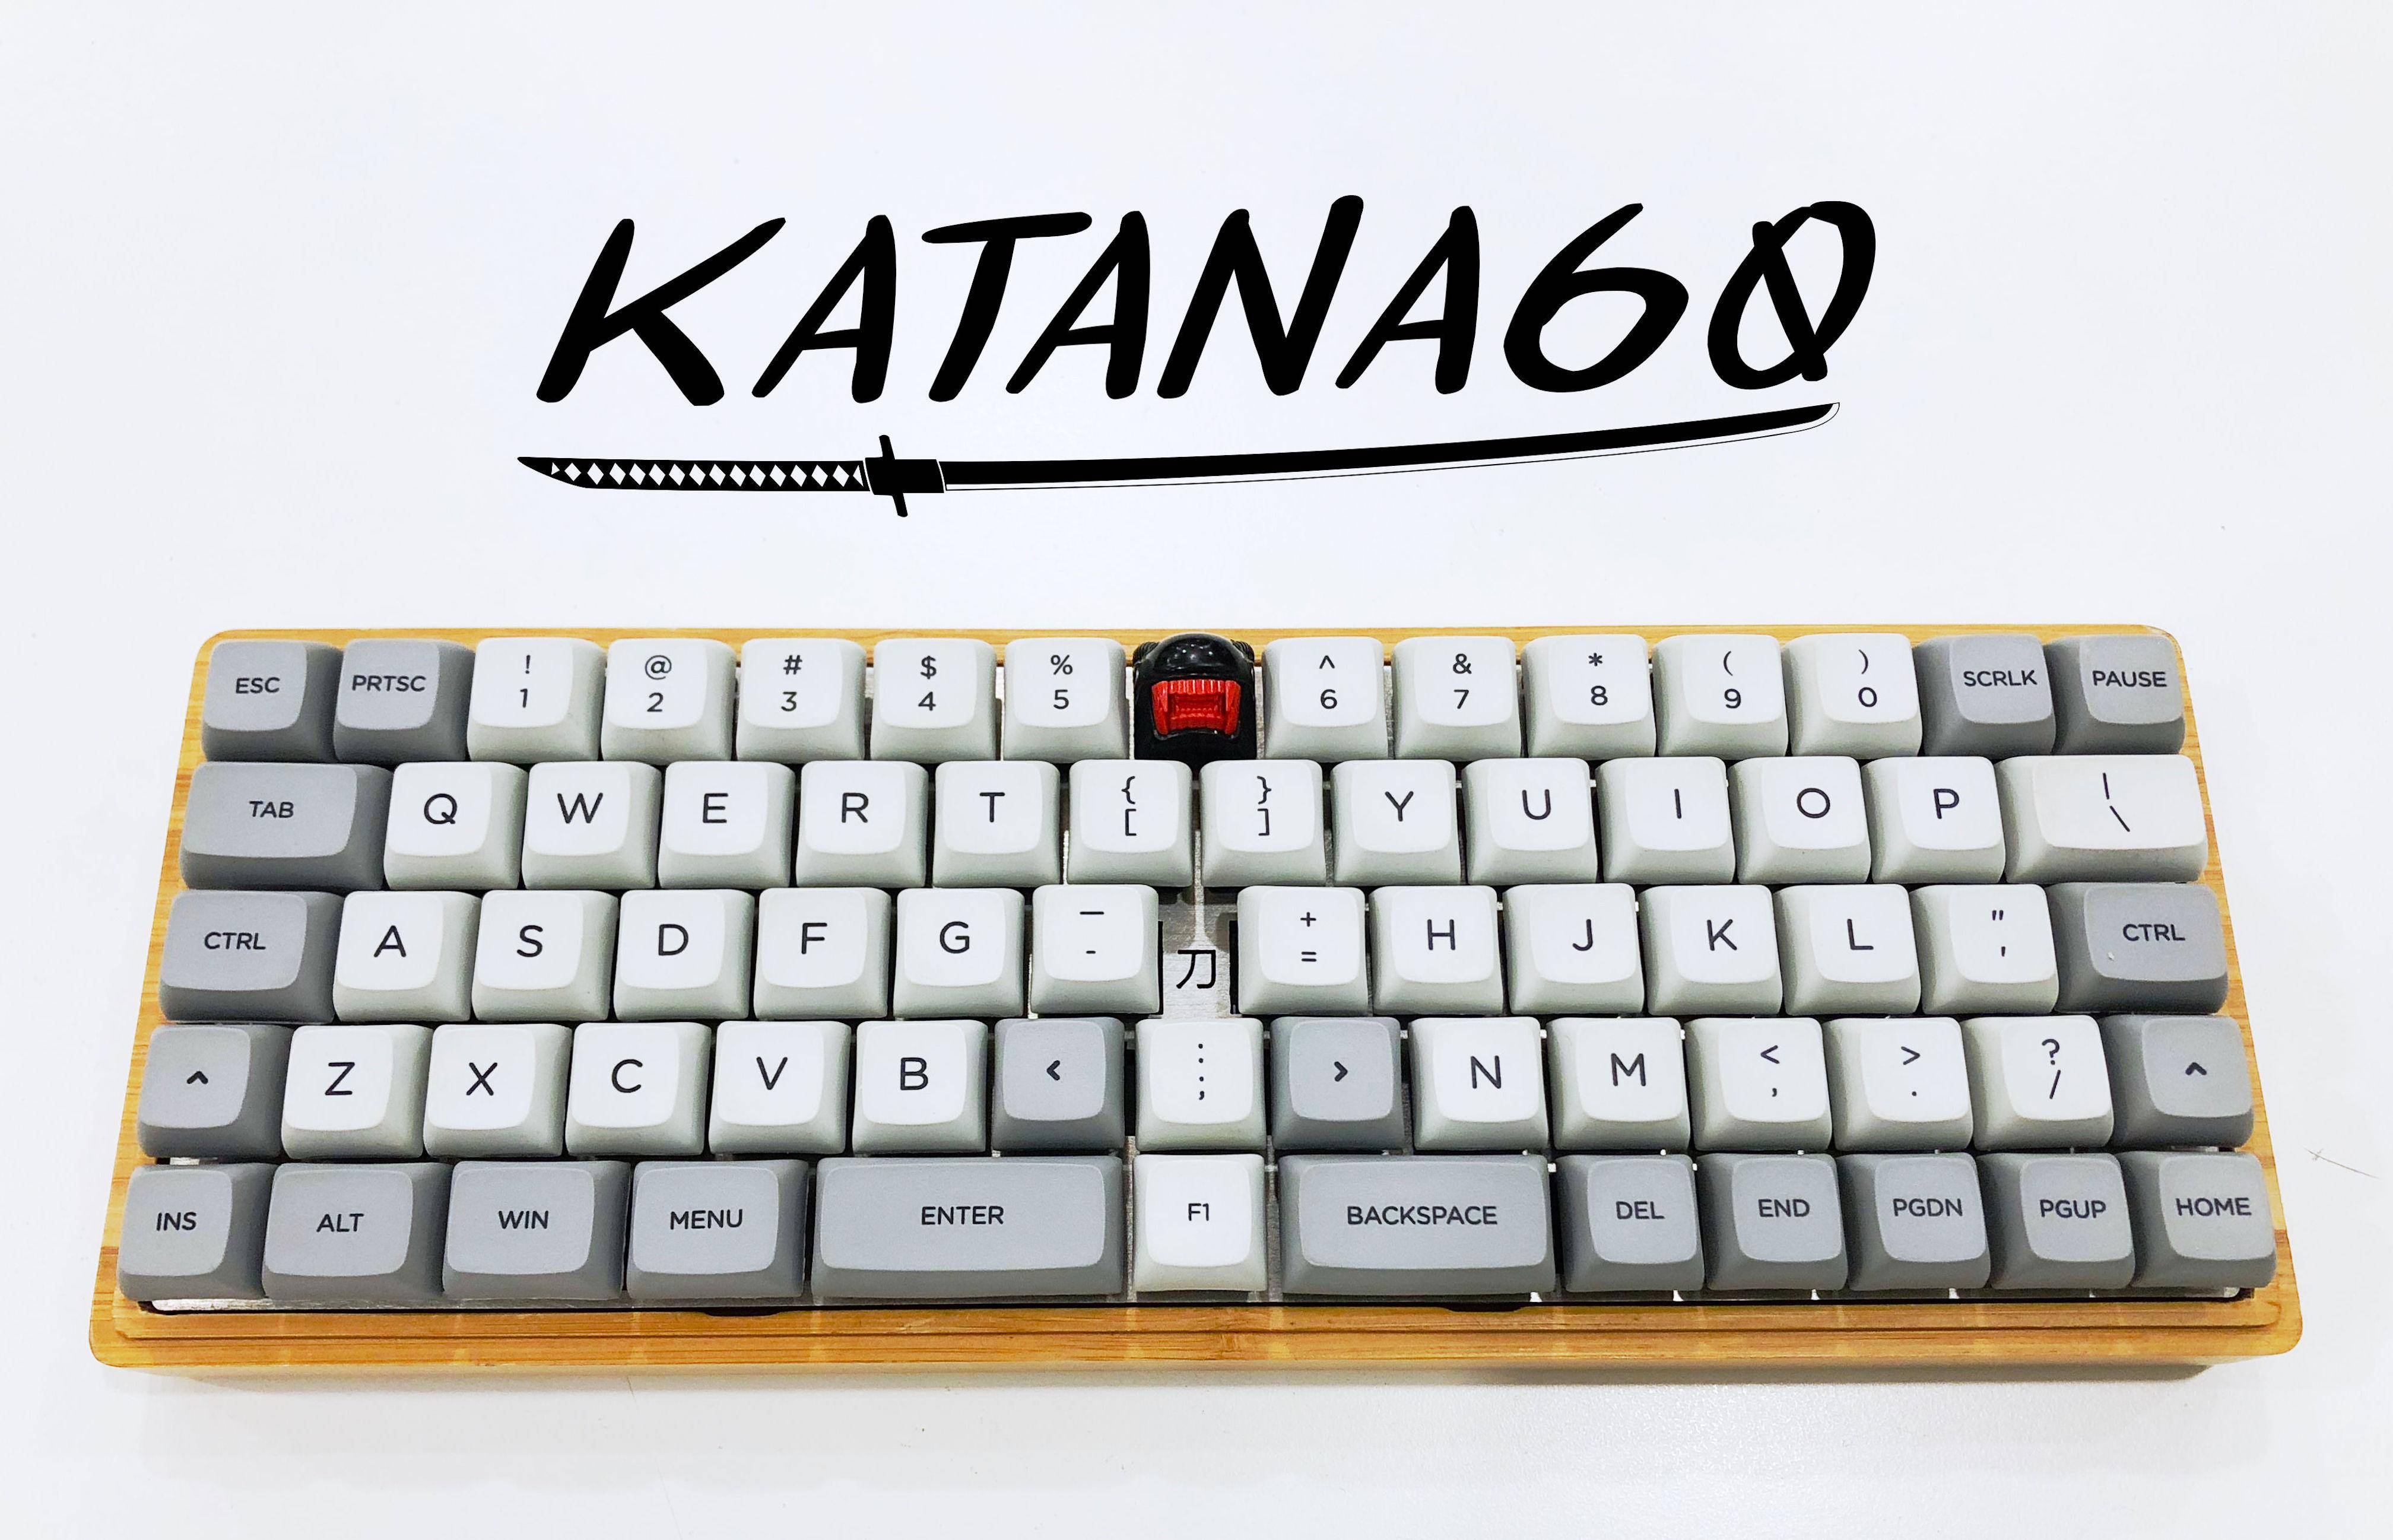 Katana60